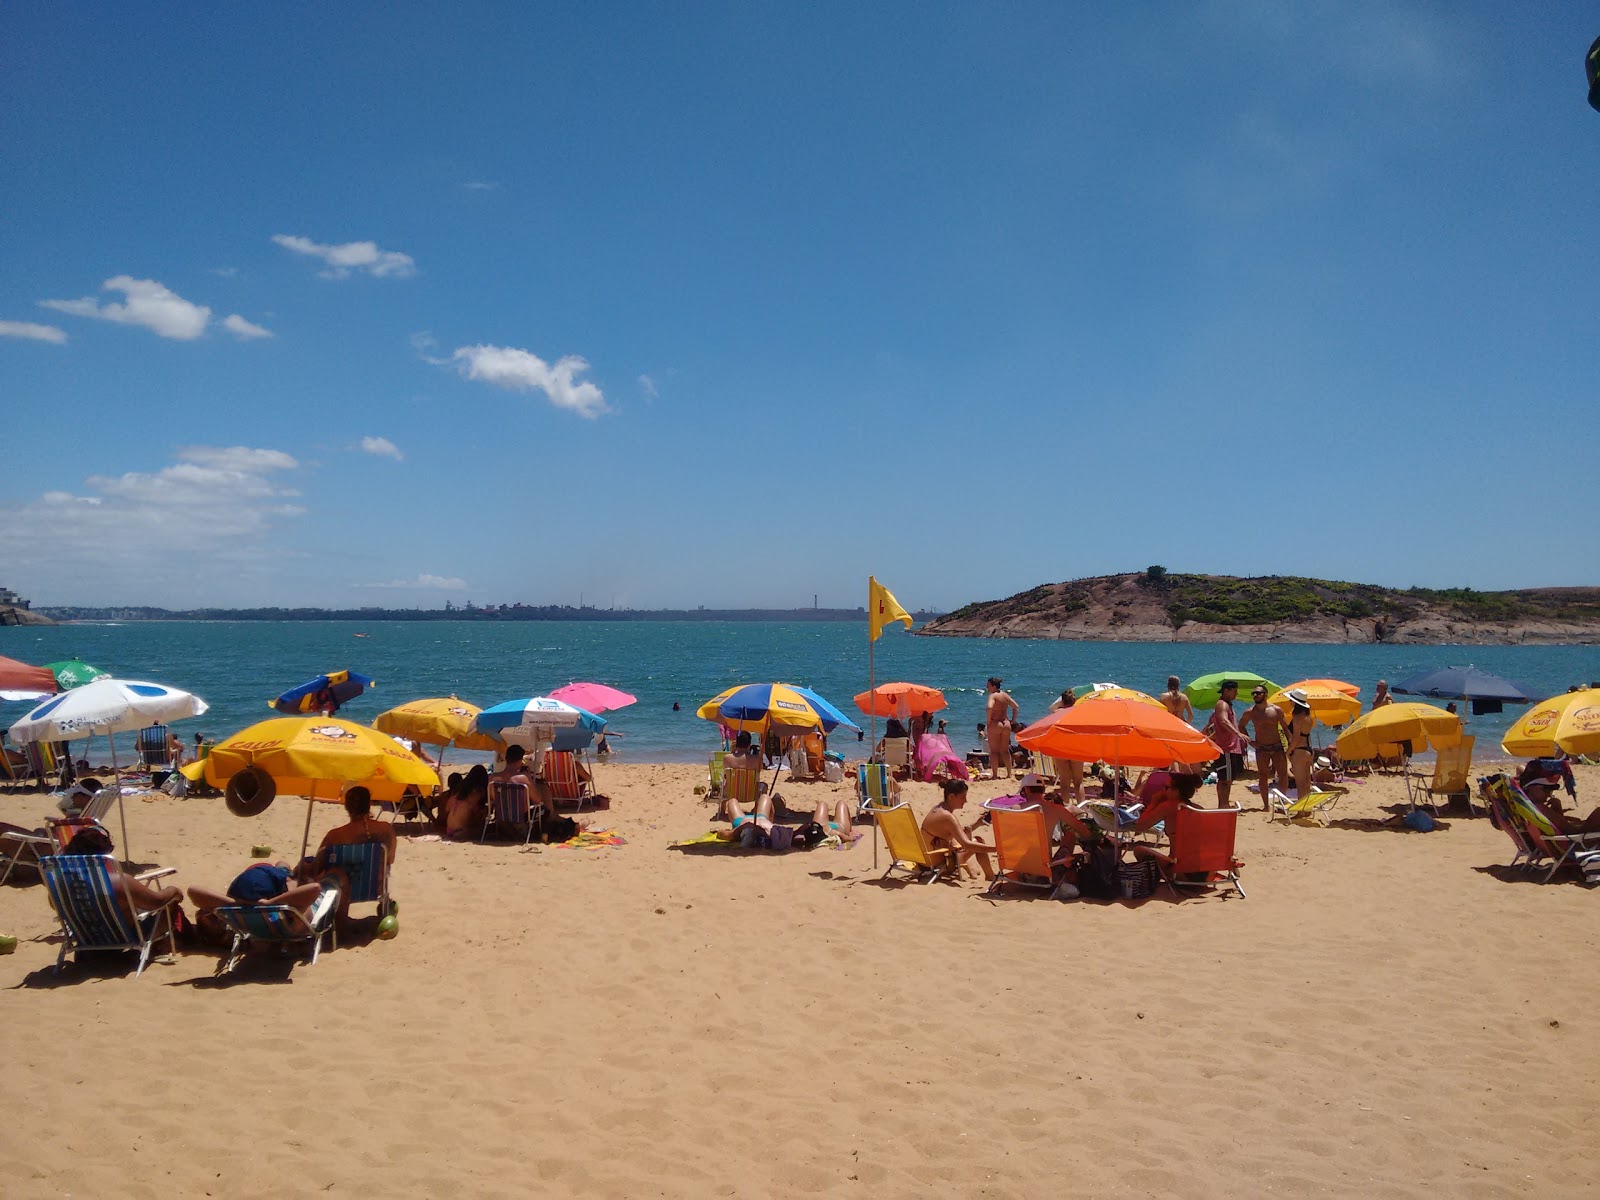 Praia da Direita'in fotoğrafı doğrudan plaj ile birlikte